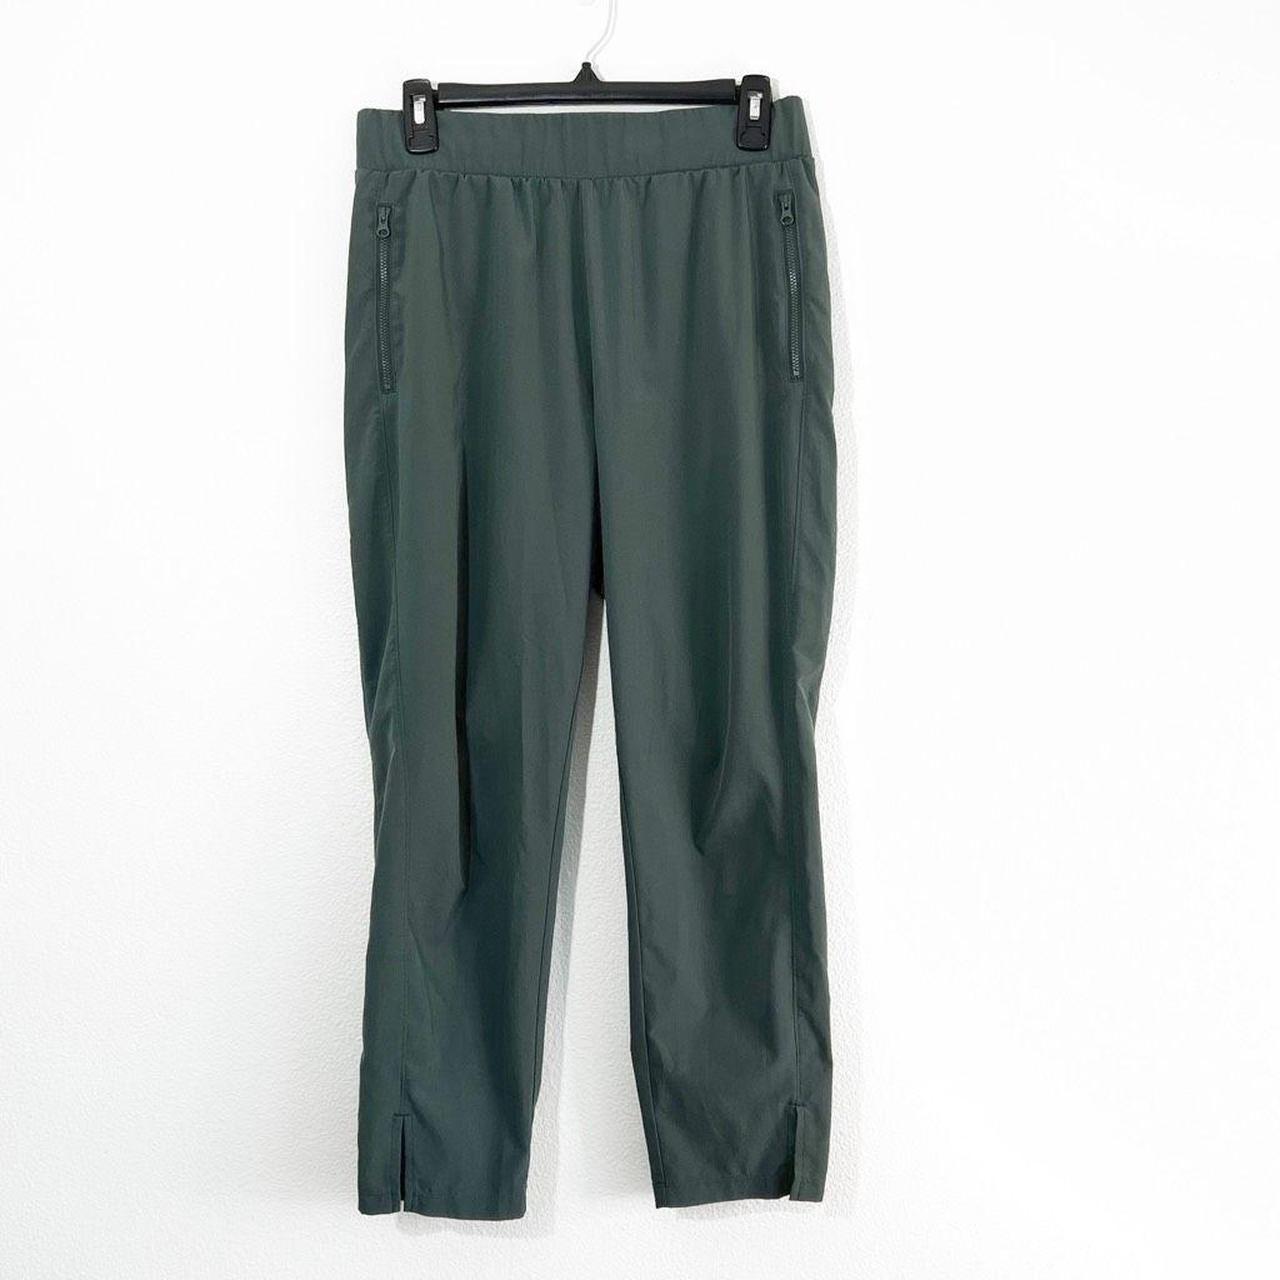 Zella Women's Green Trousers | Depop